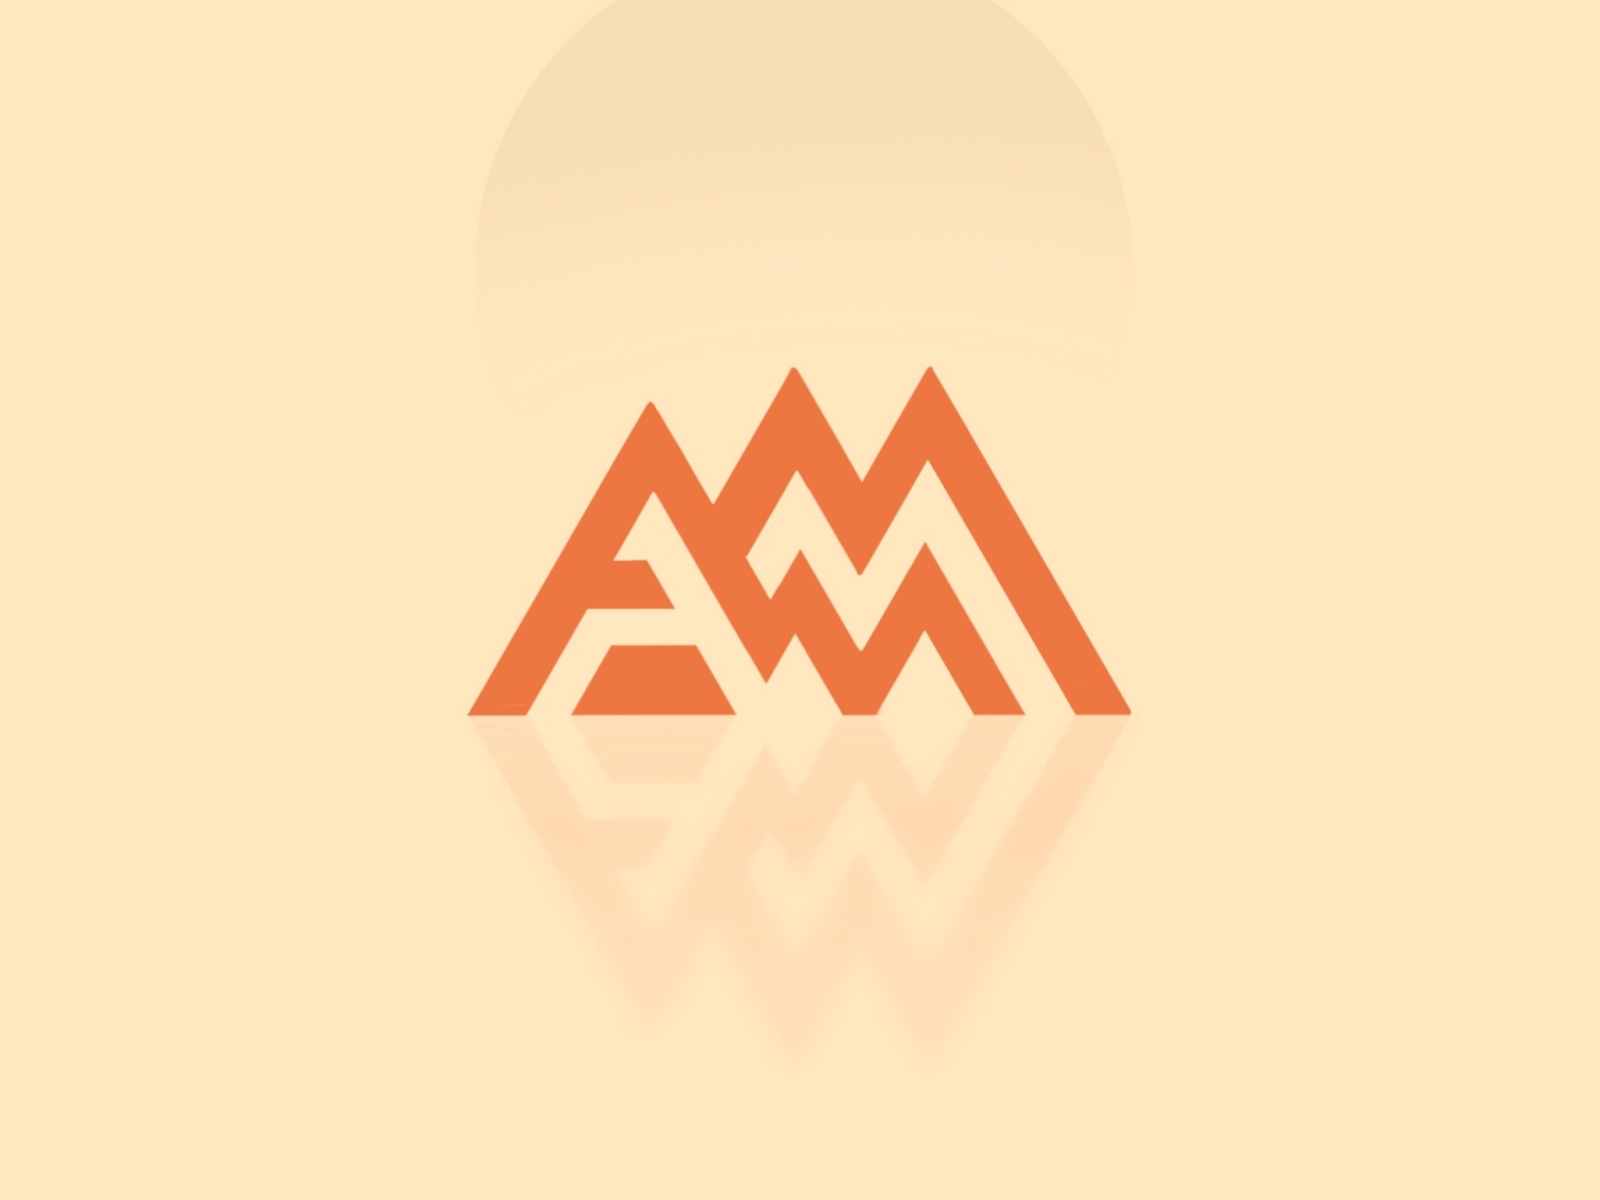 AM Logo Design In Procreate